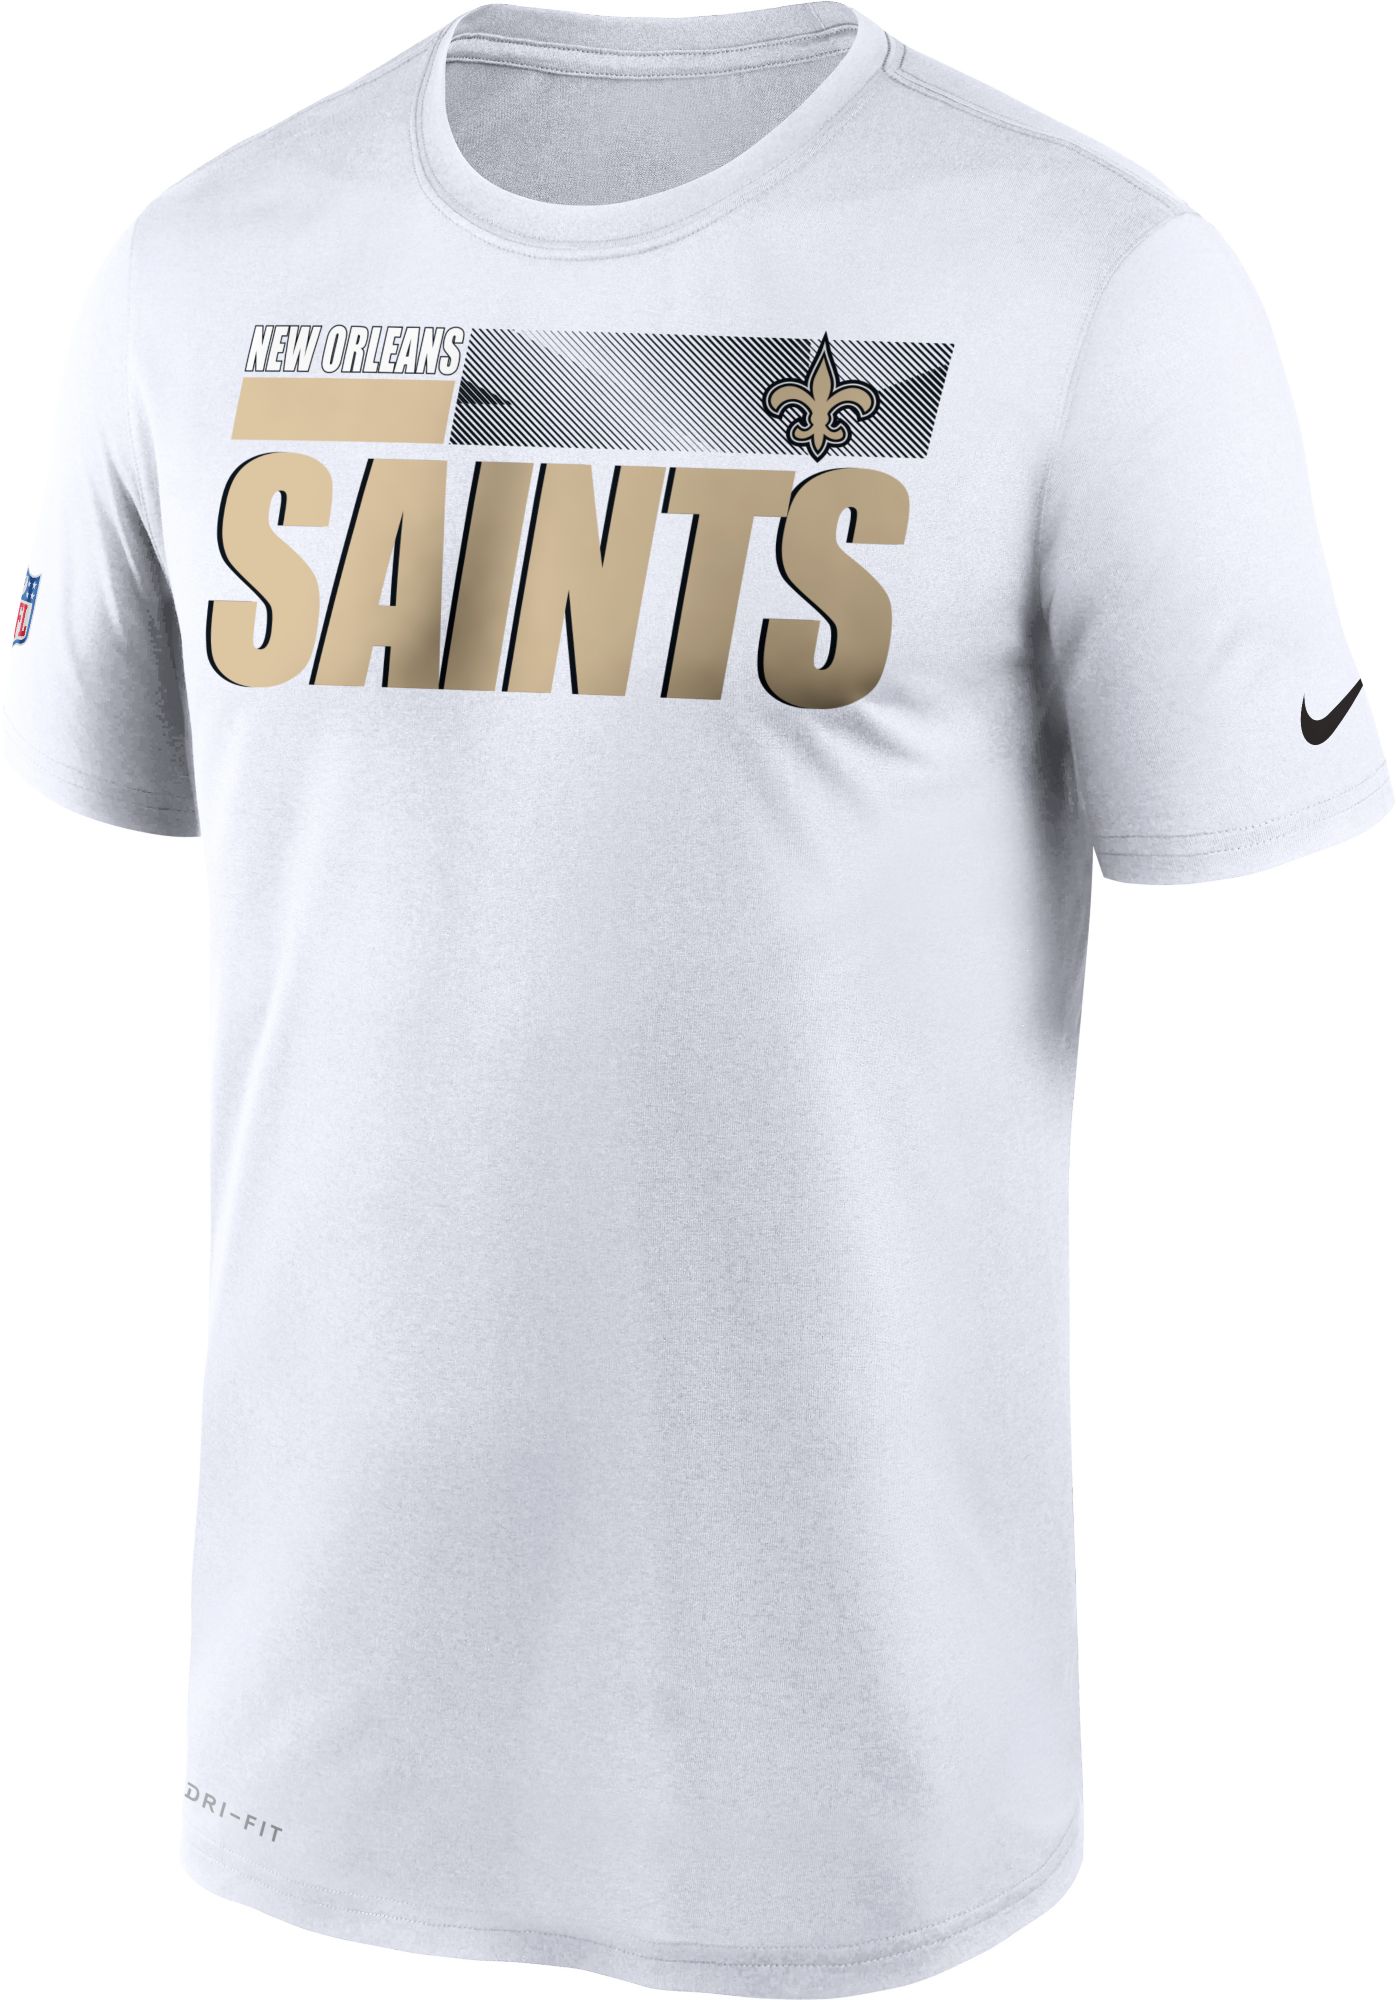 saints nike shirt